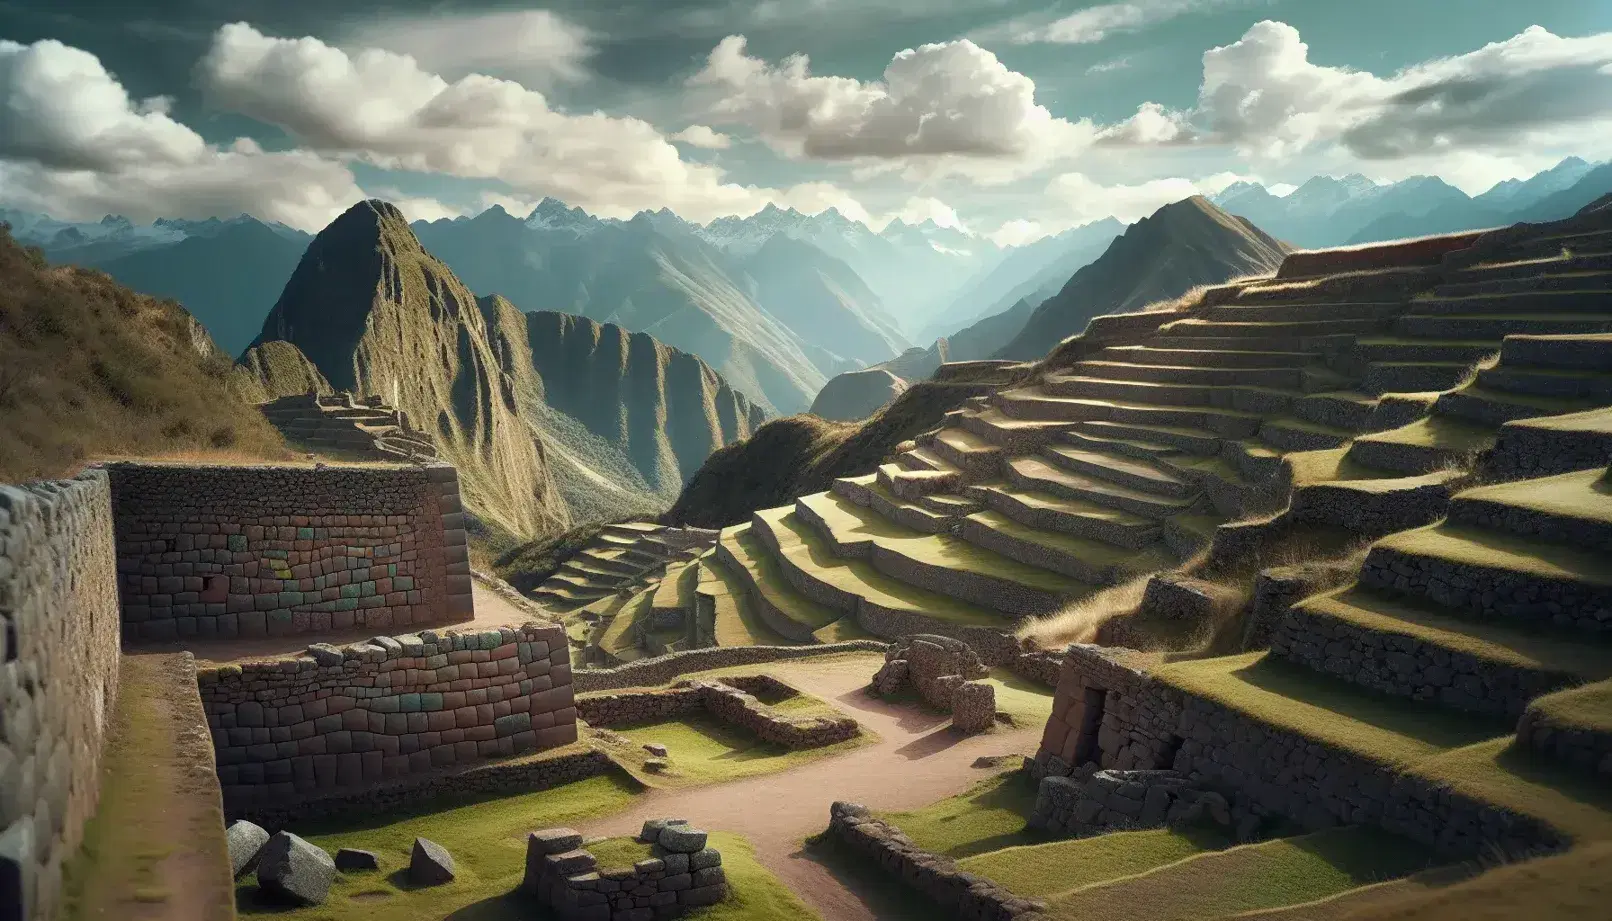 Ruinas de una antigua ciudadela inca con muros de piedra poligonal y terrazas agrícolas en una montaña neblinosa, reflejando la ingeniería y paisaje andino.